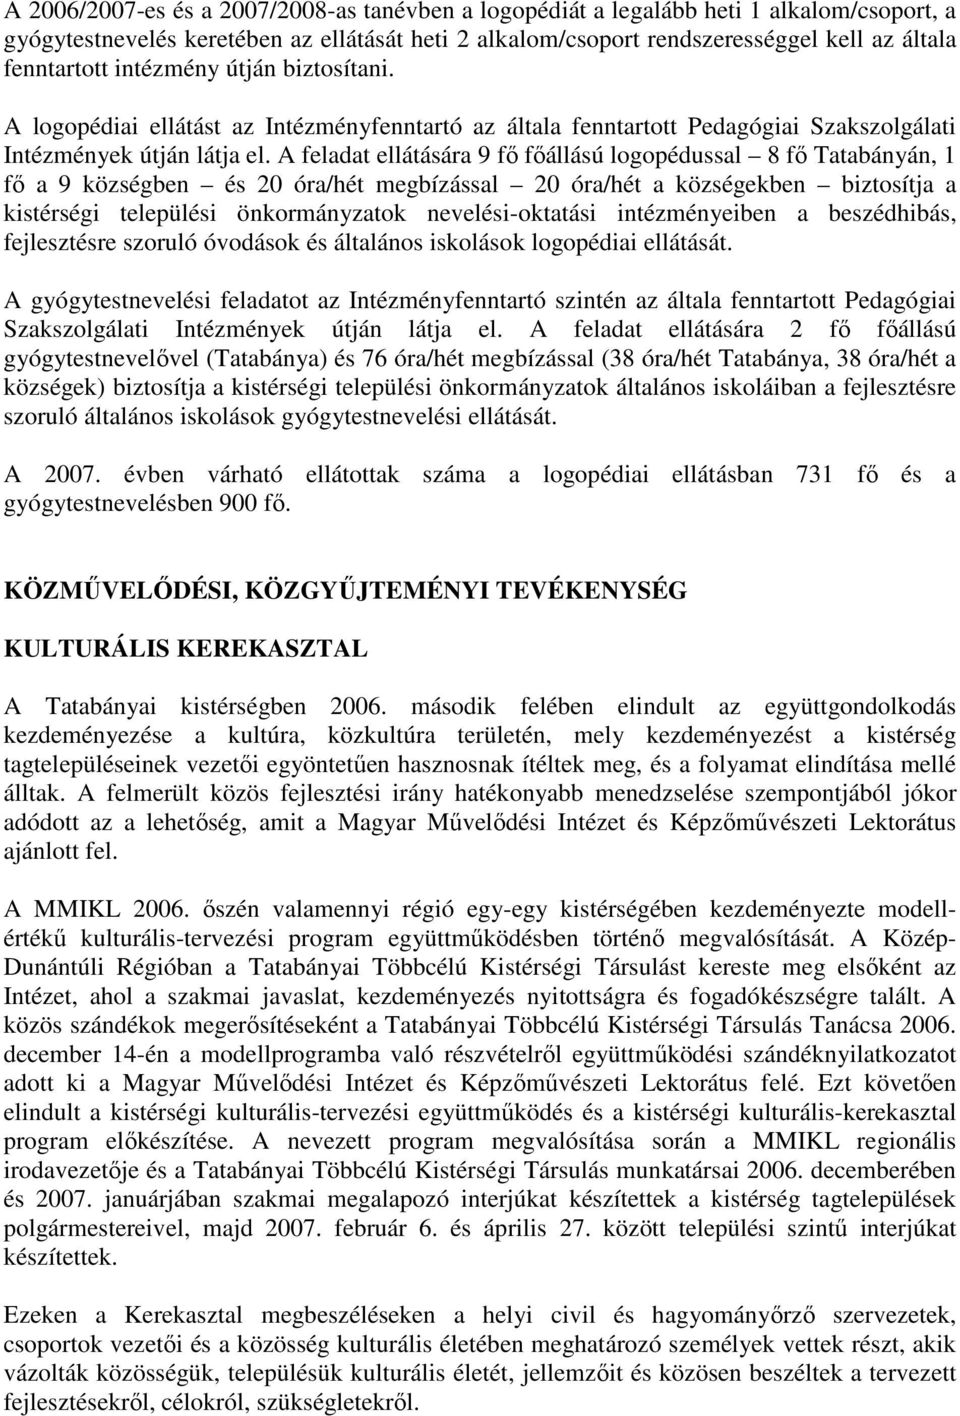 A feladat ellátására 9 fı fıállású logopédussal 8 fı Tatabányán, 1 fı a 9 községben és 20 óra/hét megbízással 20 óra/hét a községekben biztosítja a kistérségi települési önkormányzatok